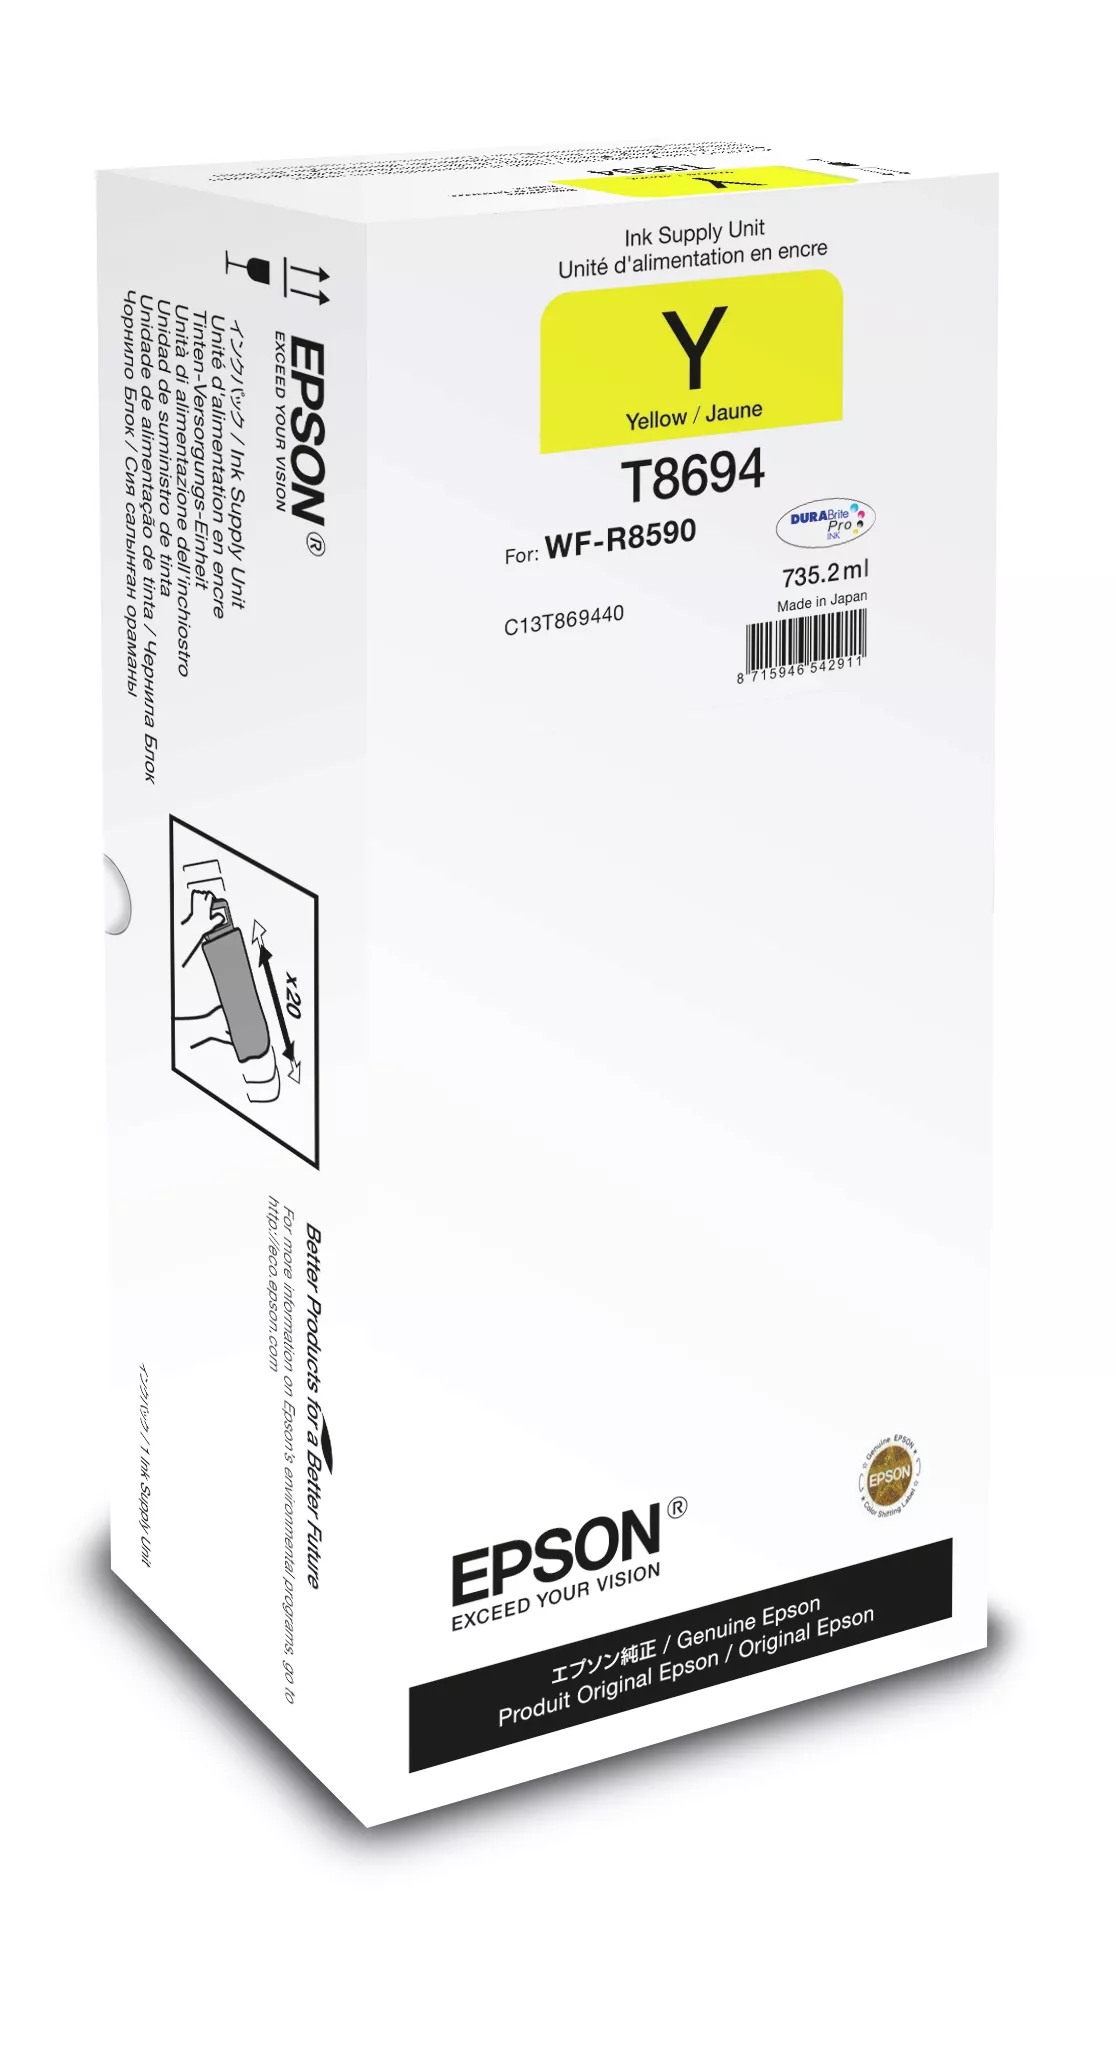 Vente Cartouches d'encre EPSON WorkForce Pro WF-R8590 Yellow XXL Ink Supply Unit sur hello RSE